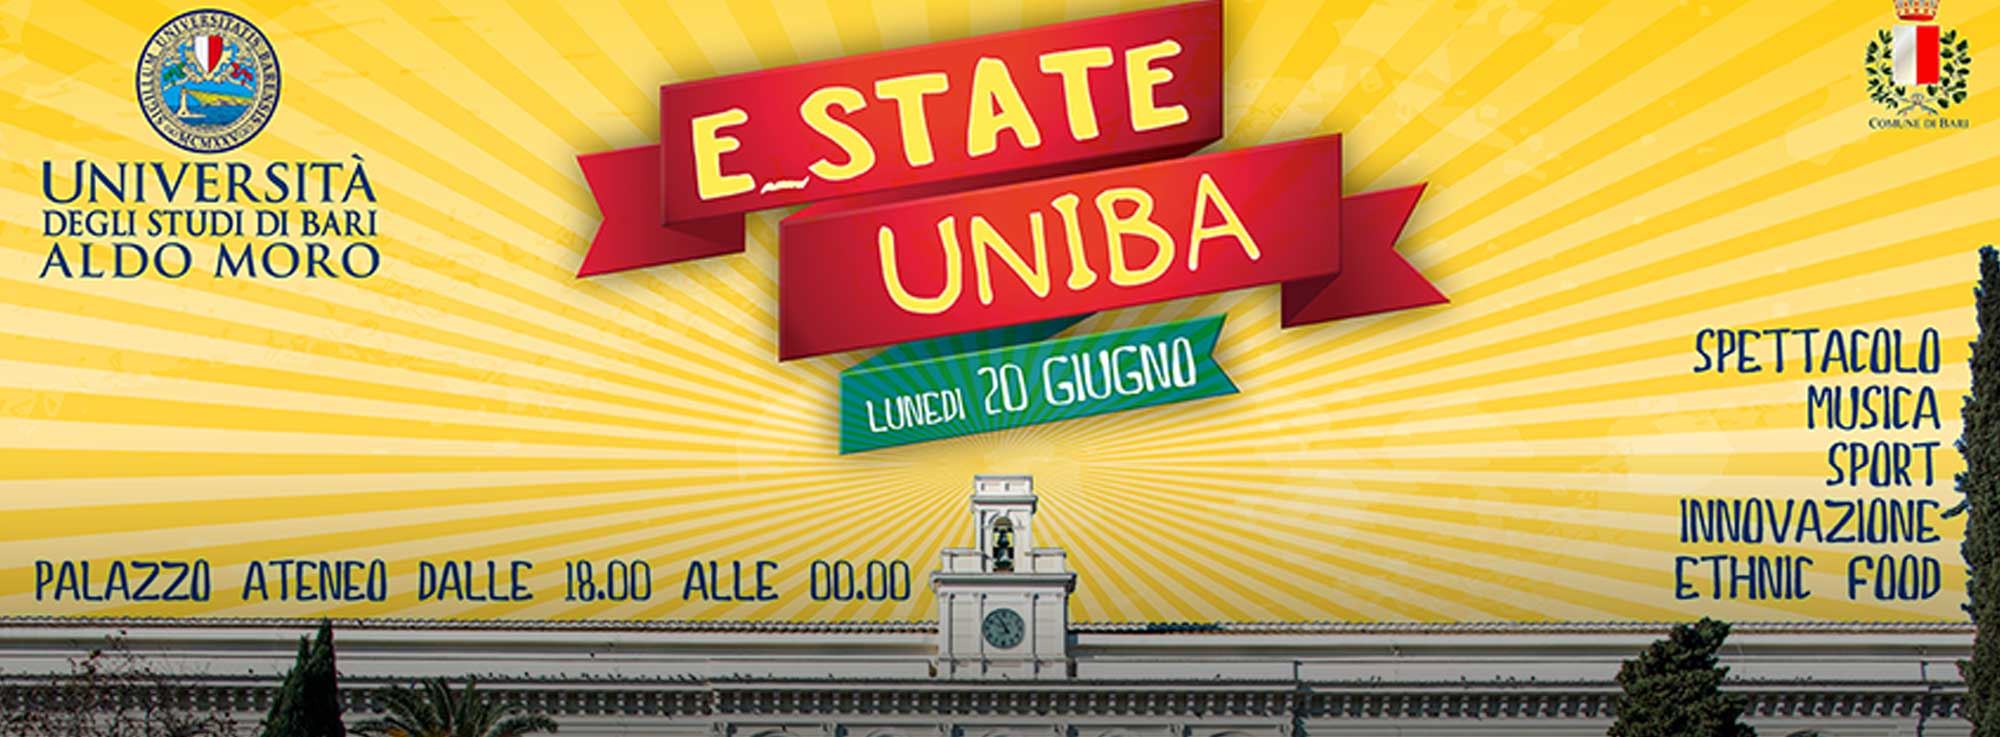 Bari: E_state UniBA